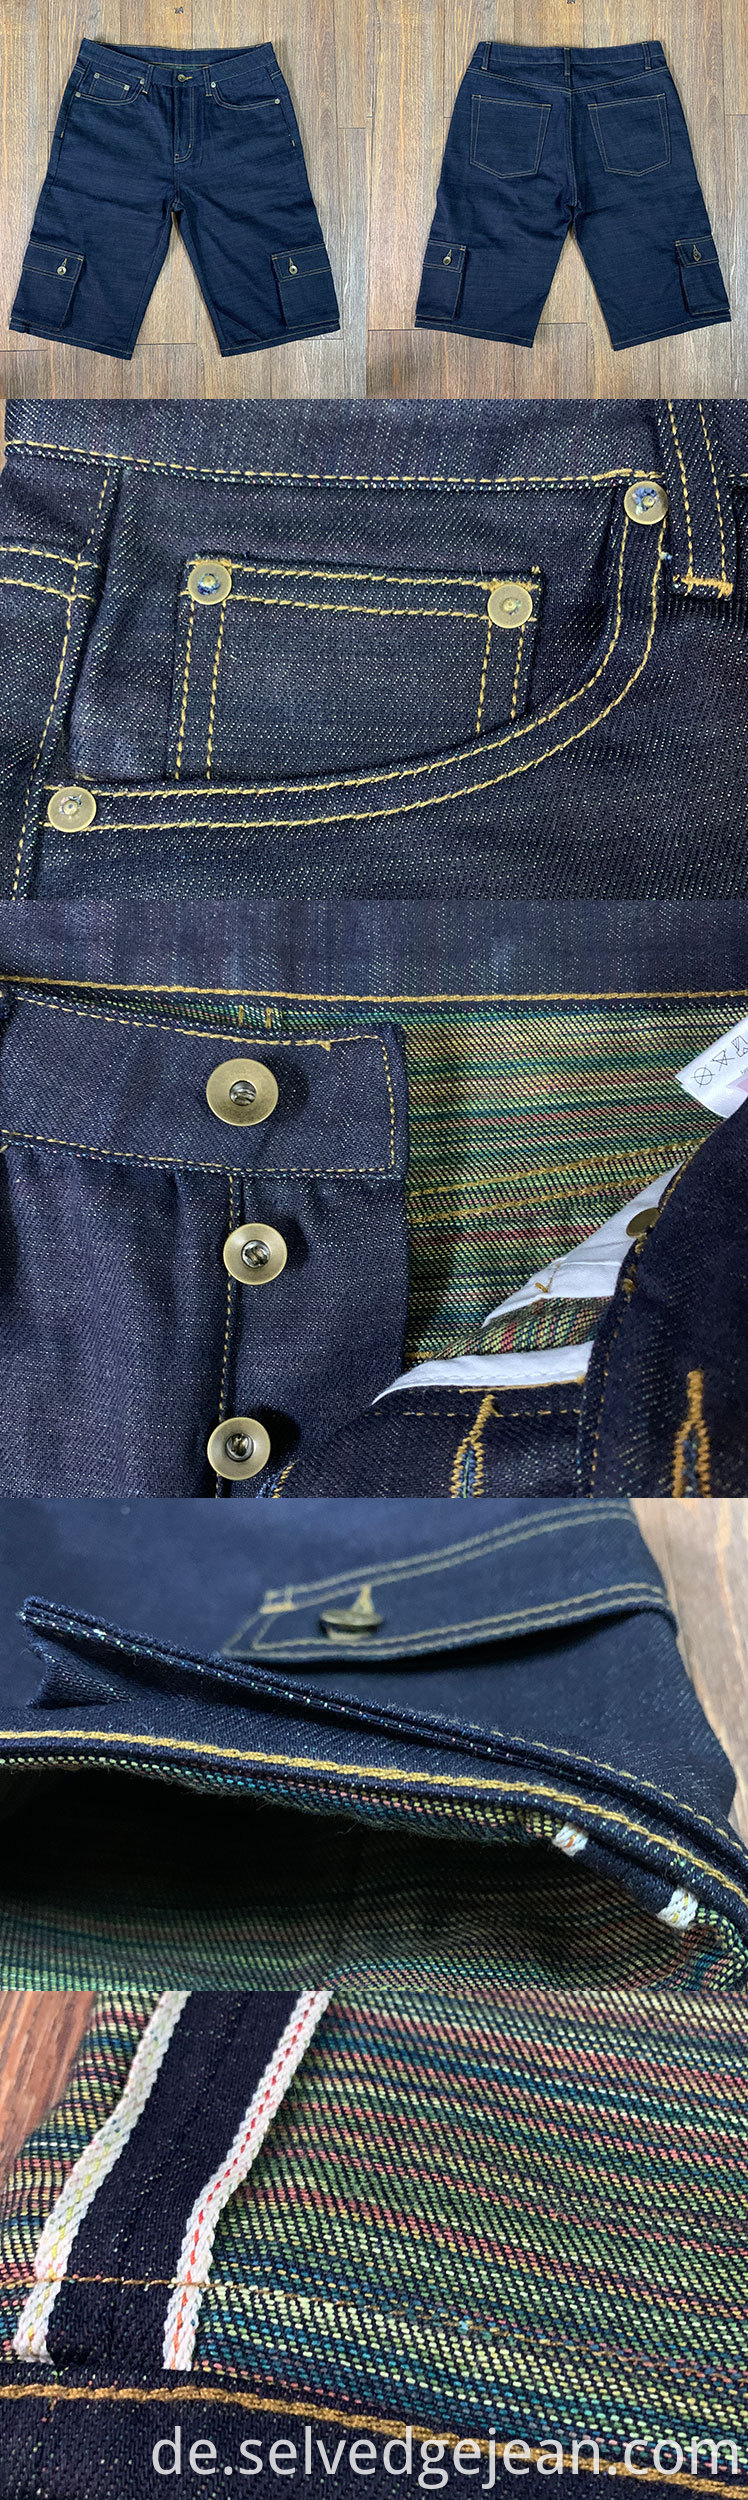 benutzerdefinierte japanische Jeans Selvage Indigo Candy Schleif 12oz Multifunktion Frachthose Vintage Raw Selvedge Jeans Shorts für Männer Frauen